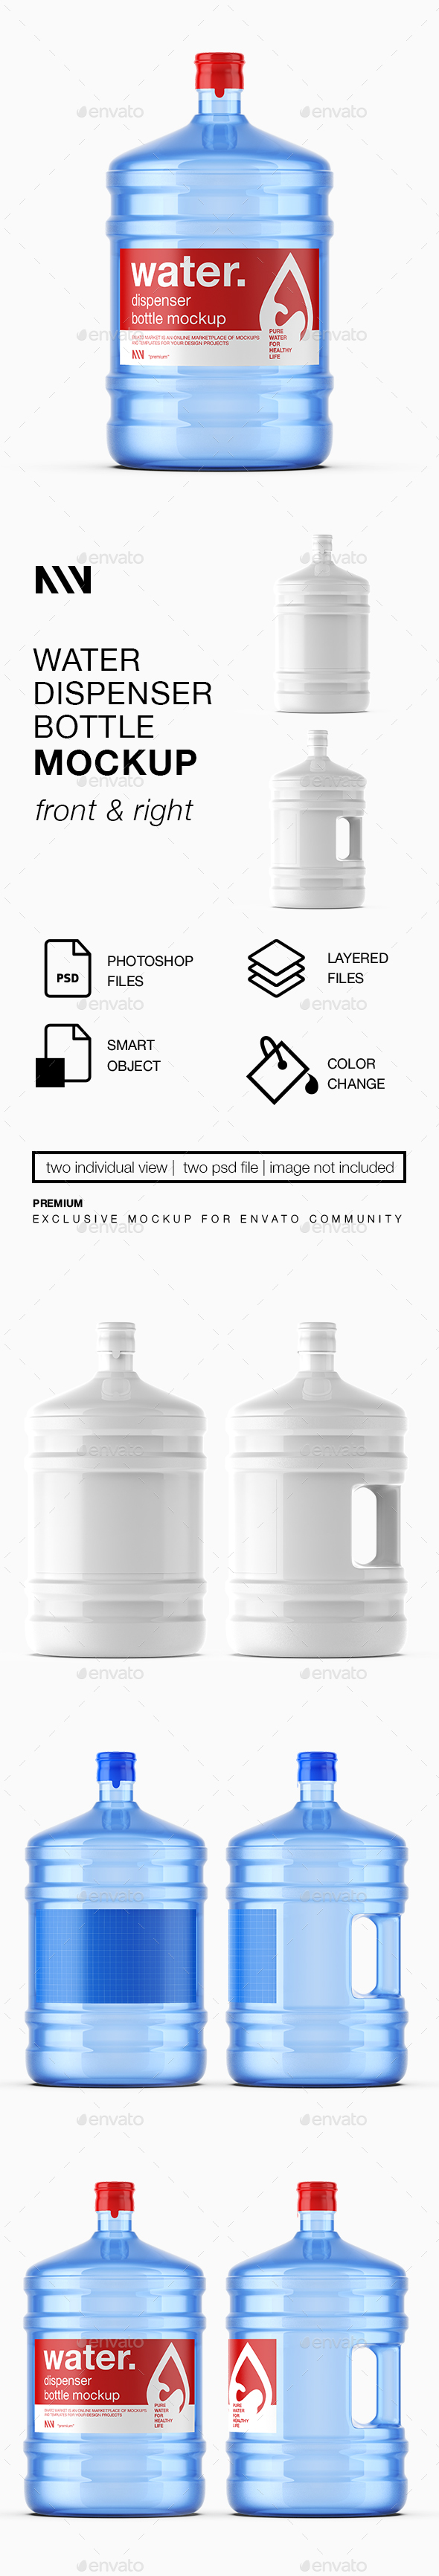 Water Dispenser Bottle Mockup